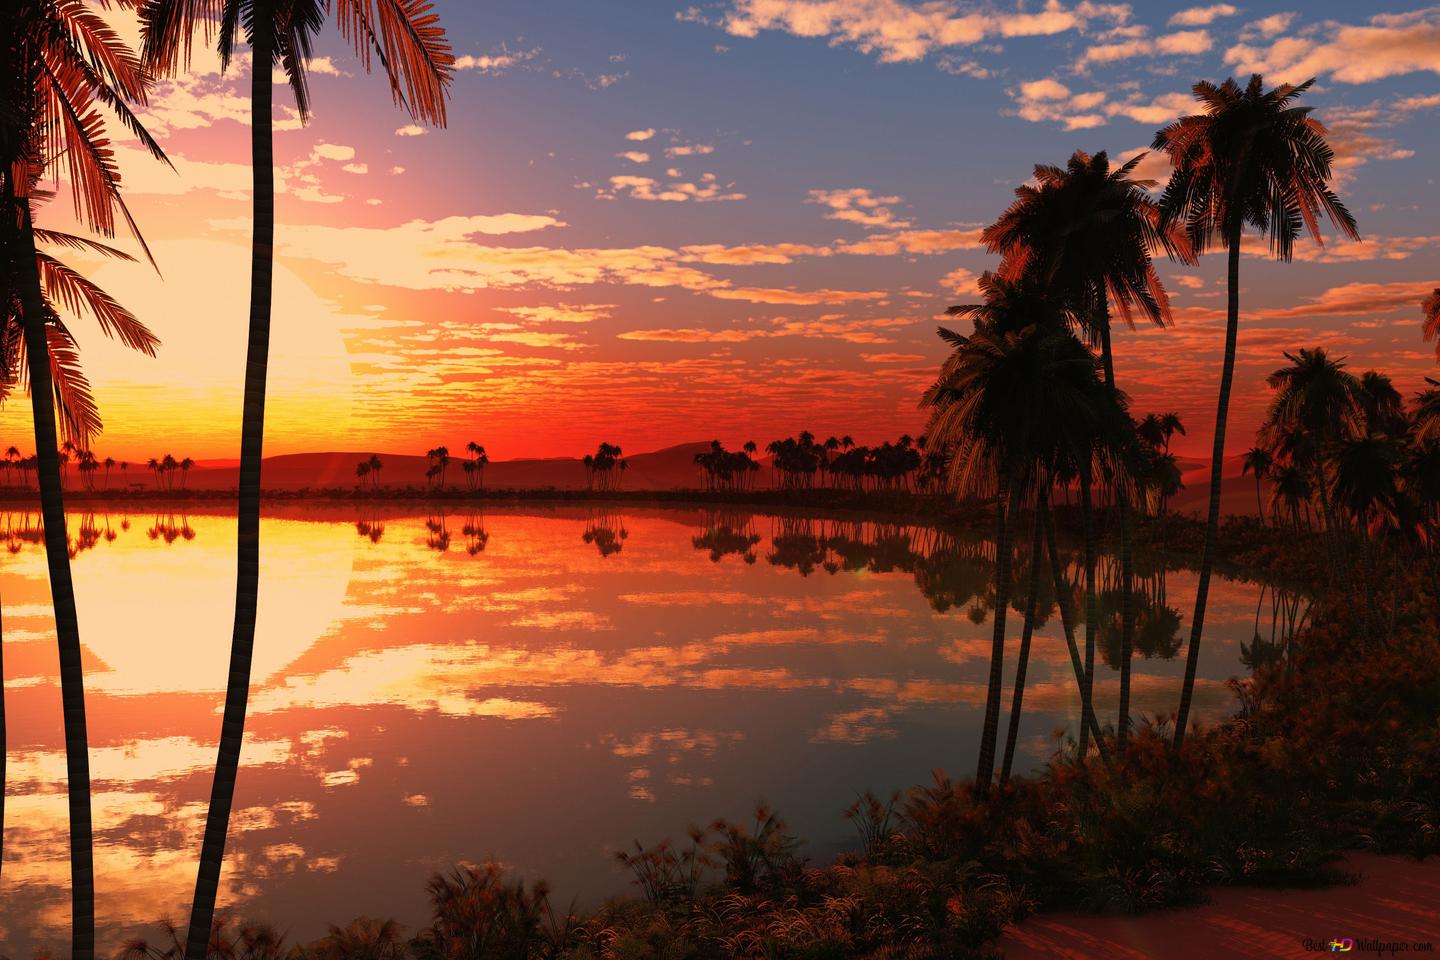  Sonnenaufgang Hintergrundbild 1440x960. Palmen und Landschaft, die sich im Wasser in der Landschaft der roten Wolken bei Sonnenaufgang widerspiegeln 4K Hintergrundbild herunterladen